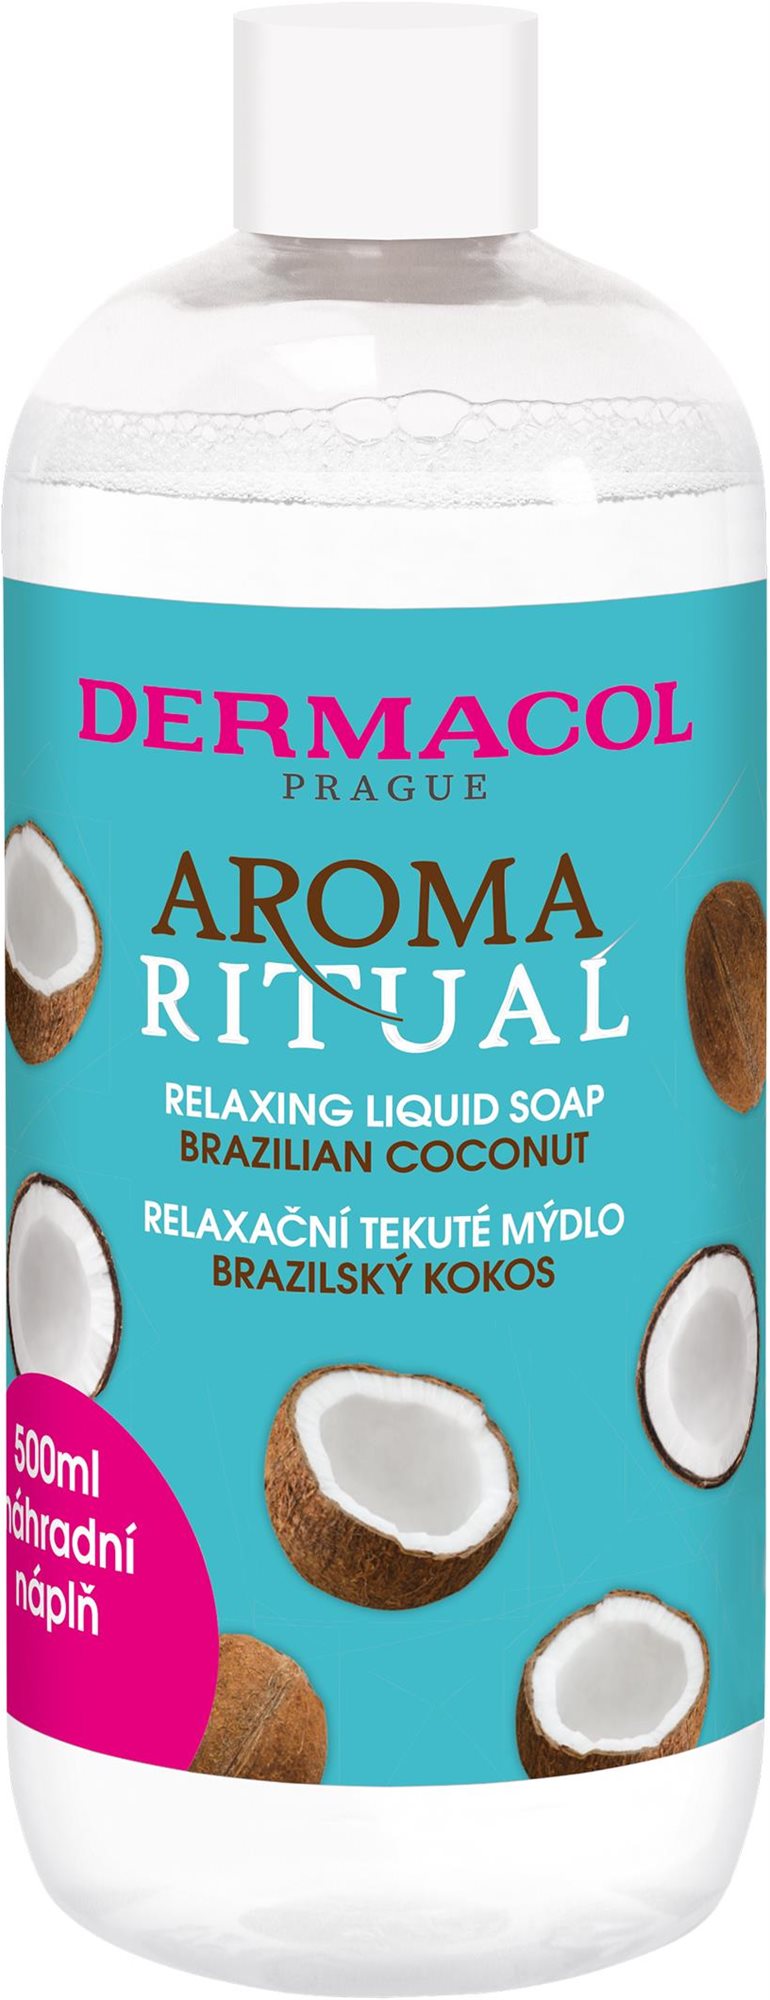 DERMACOL Aroma Ritual refill liquid soap - Brazilian Coconut 500 ml